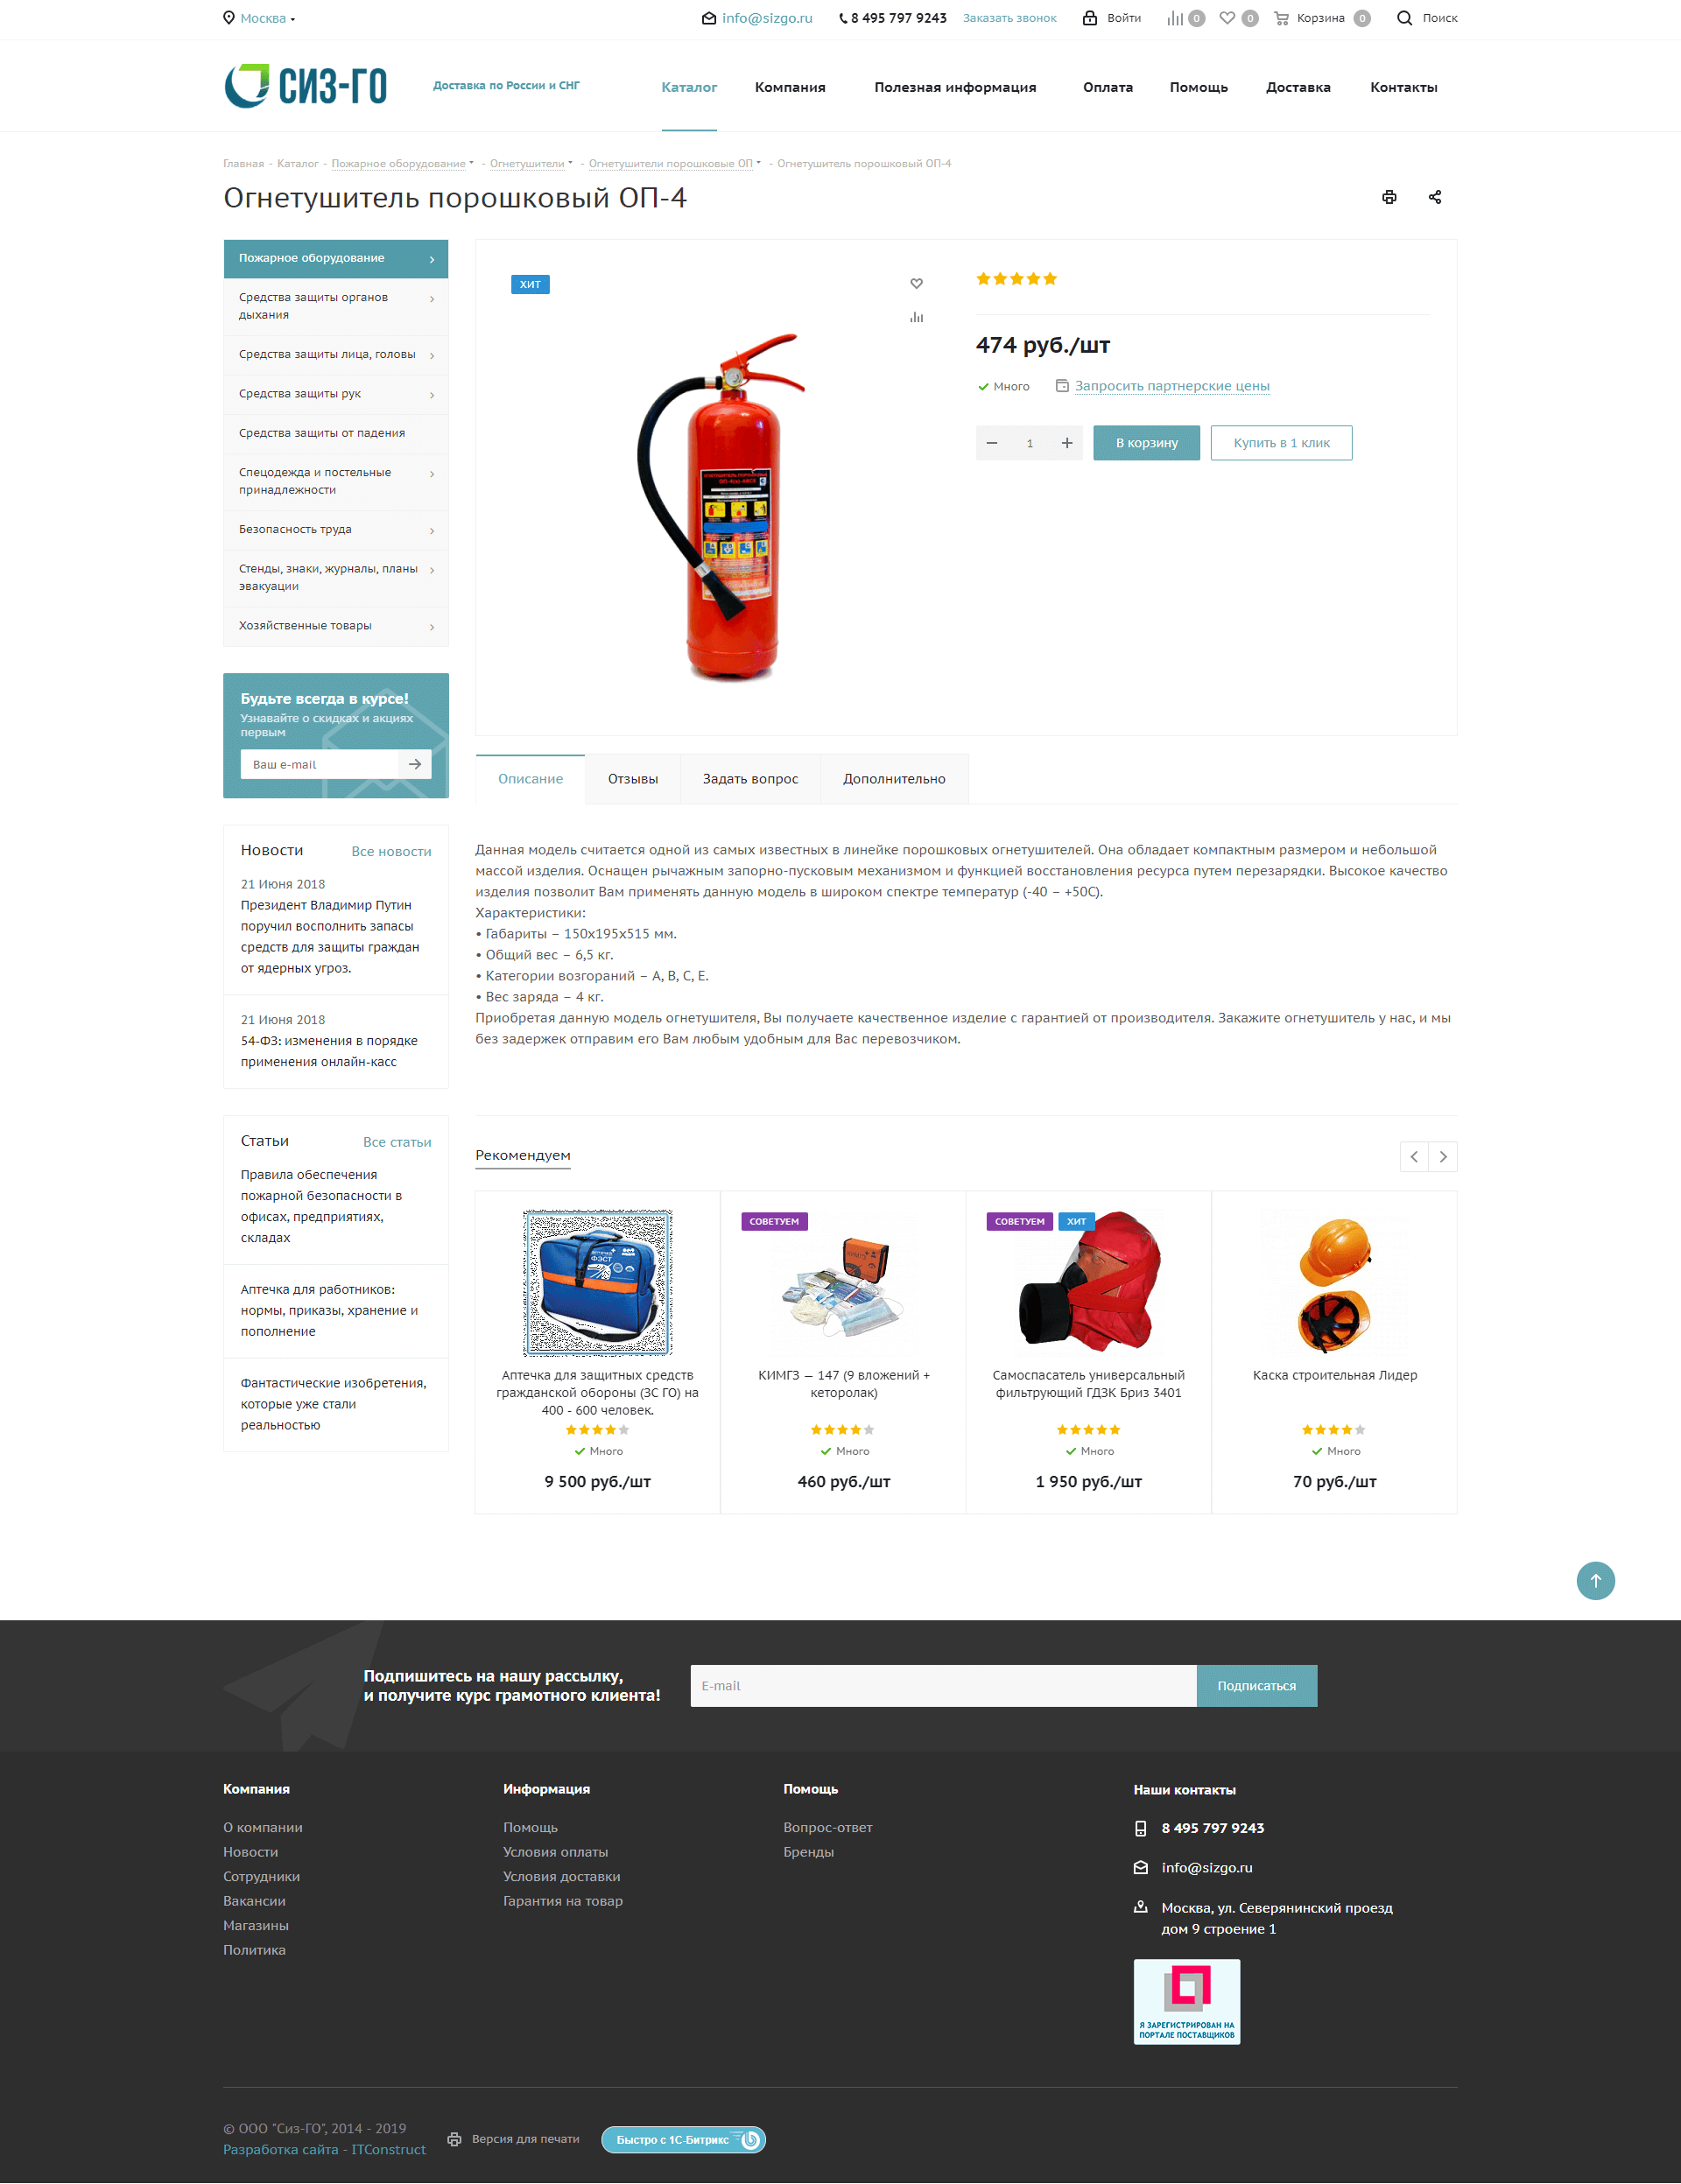 сиз-го продажа средств защиты и противопожарного оборудования